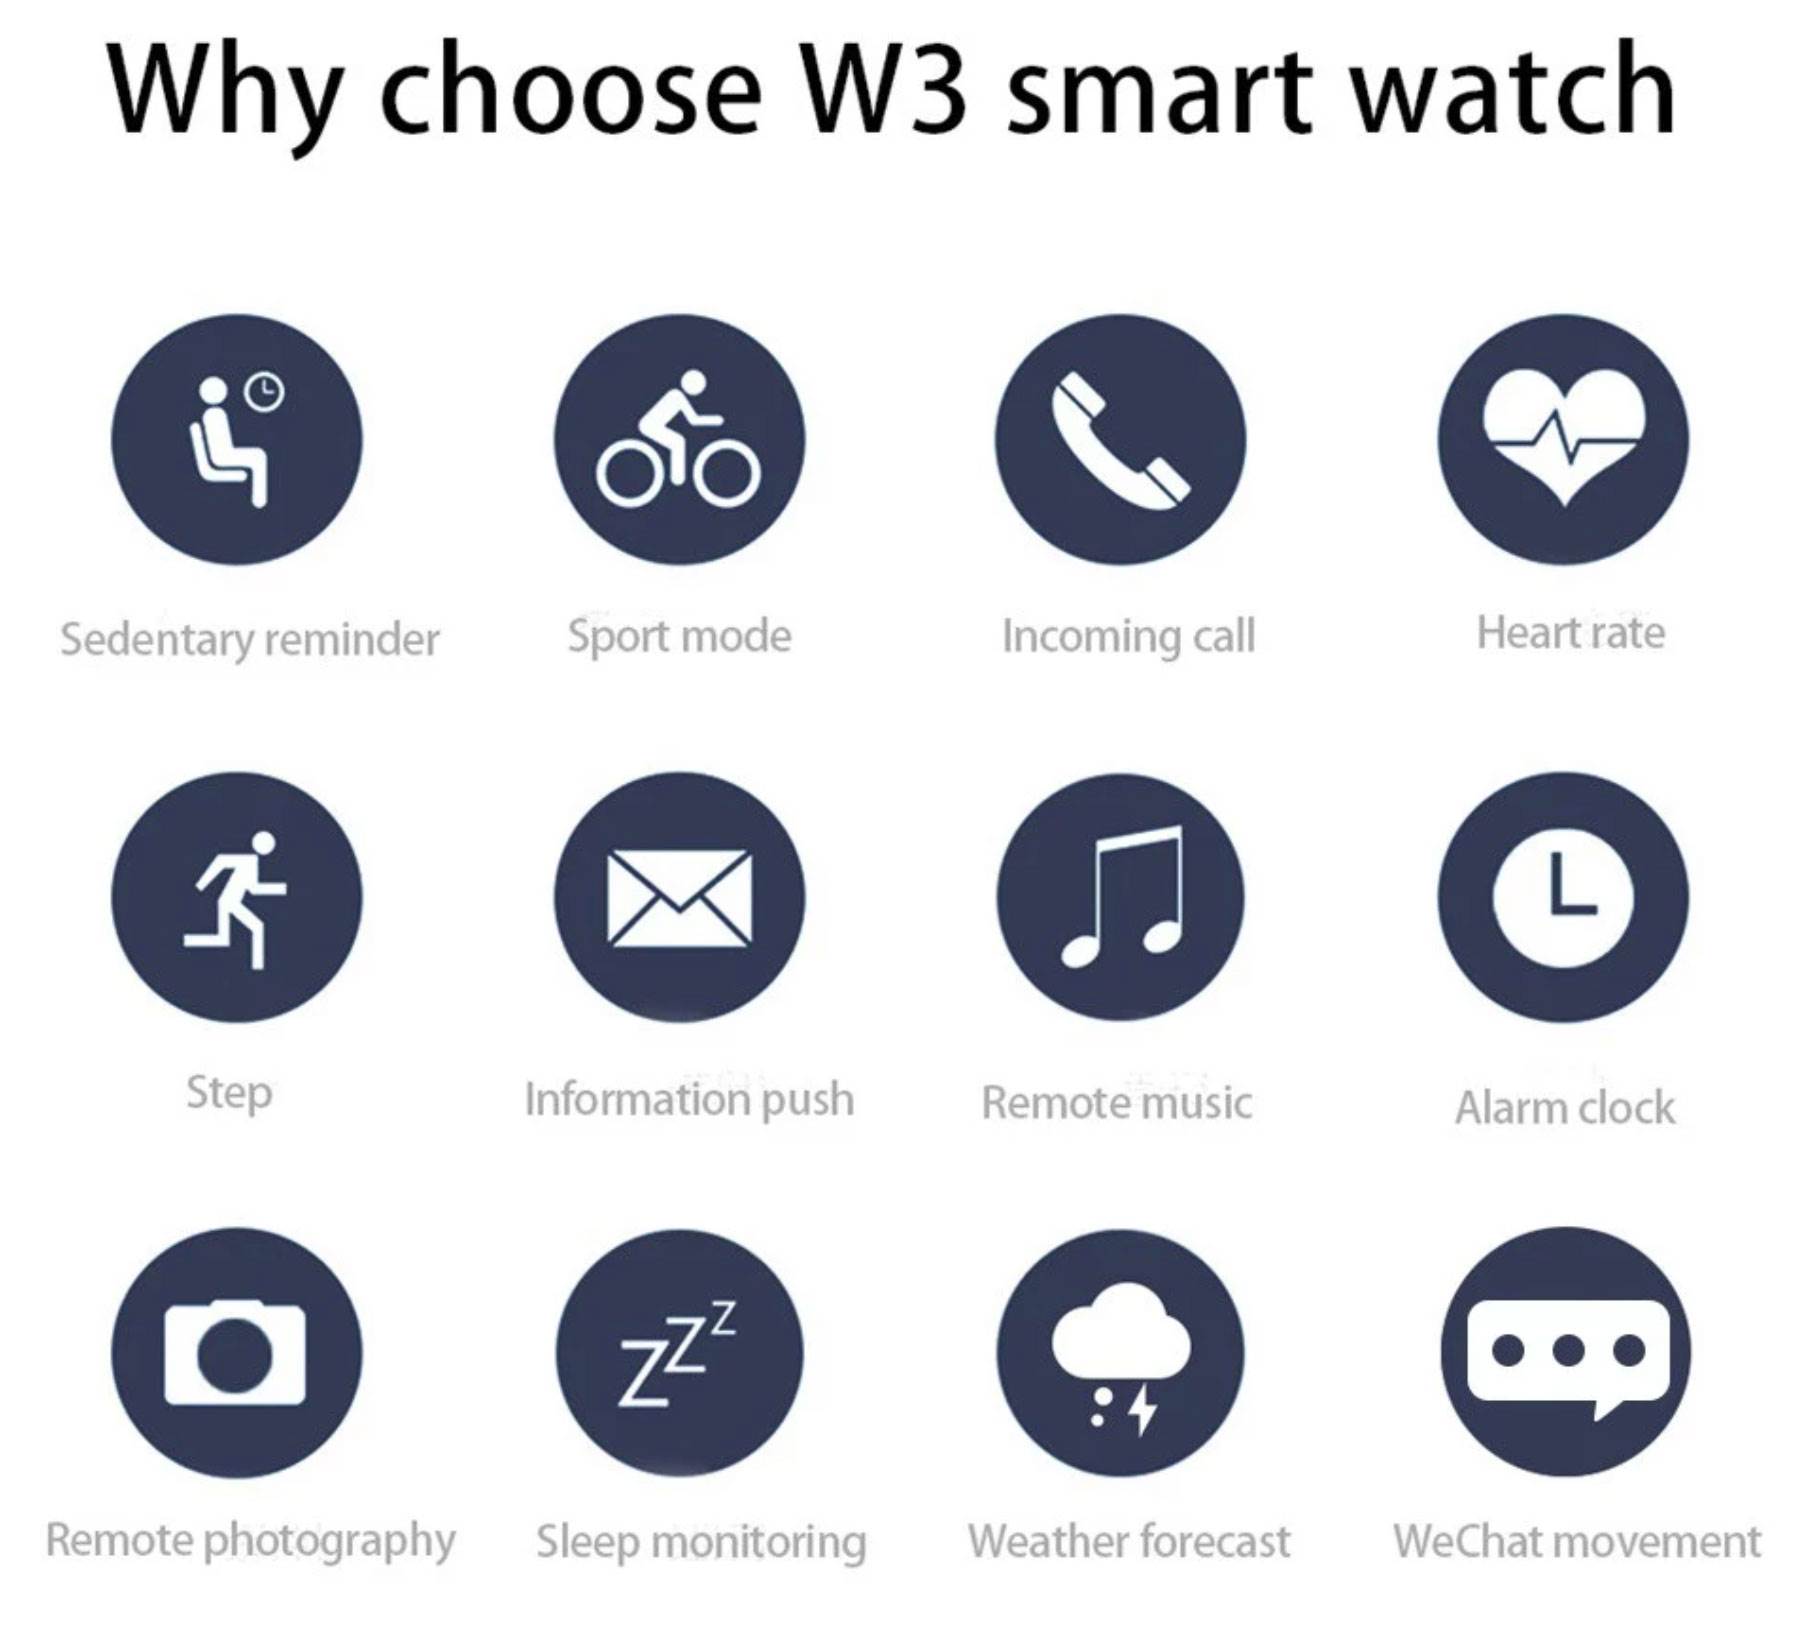 Sportowy SmartWatch OUKITEL W3 w super cenie ciekawostki tani smartwatch, SmartWatch OUKITEL W3, promcja  Za oknem słońce, więc wielu z Was na pewno szuka jakiegoś ciekawego SmartWatcha, który będzie śledzić Waszą aktywność. W związku z tym dziś mamy dla Was OUKITEL W3. SmartWatch, który możecie kupić w super cenie. sm2